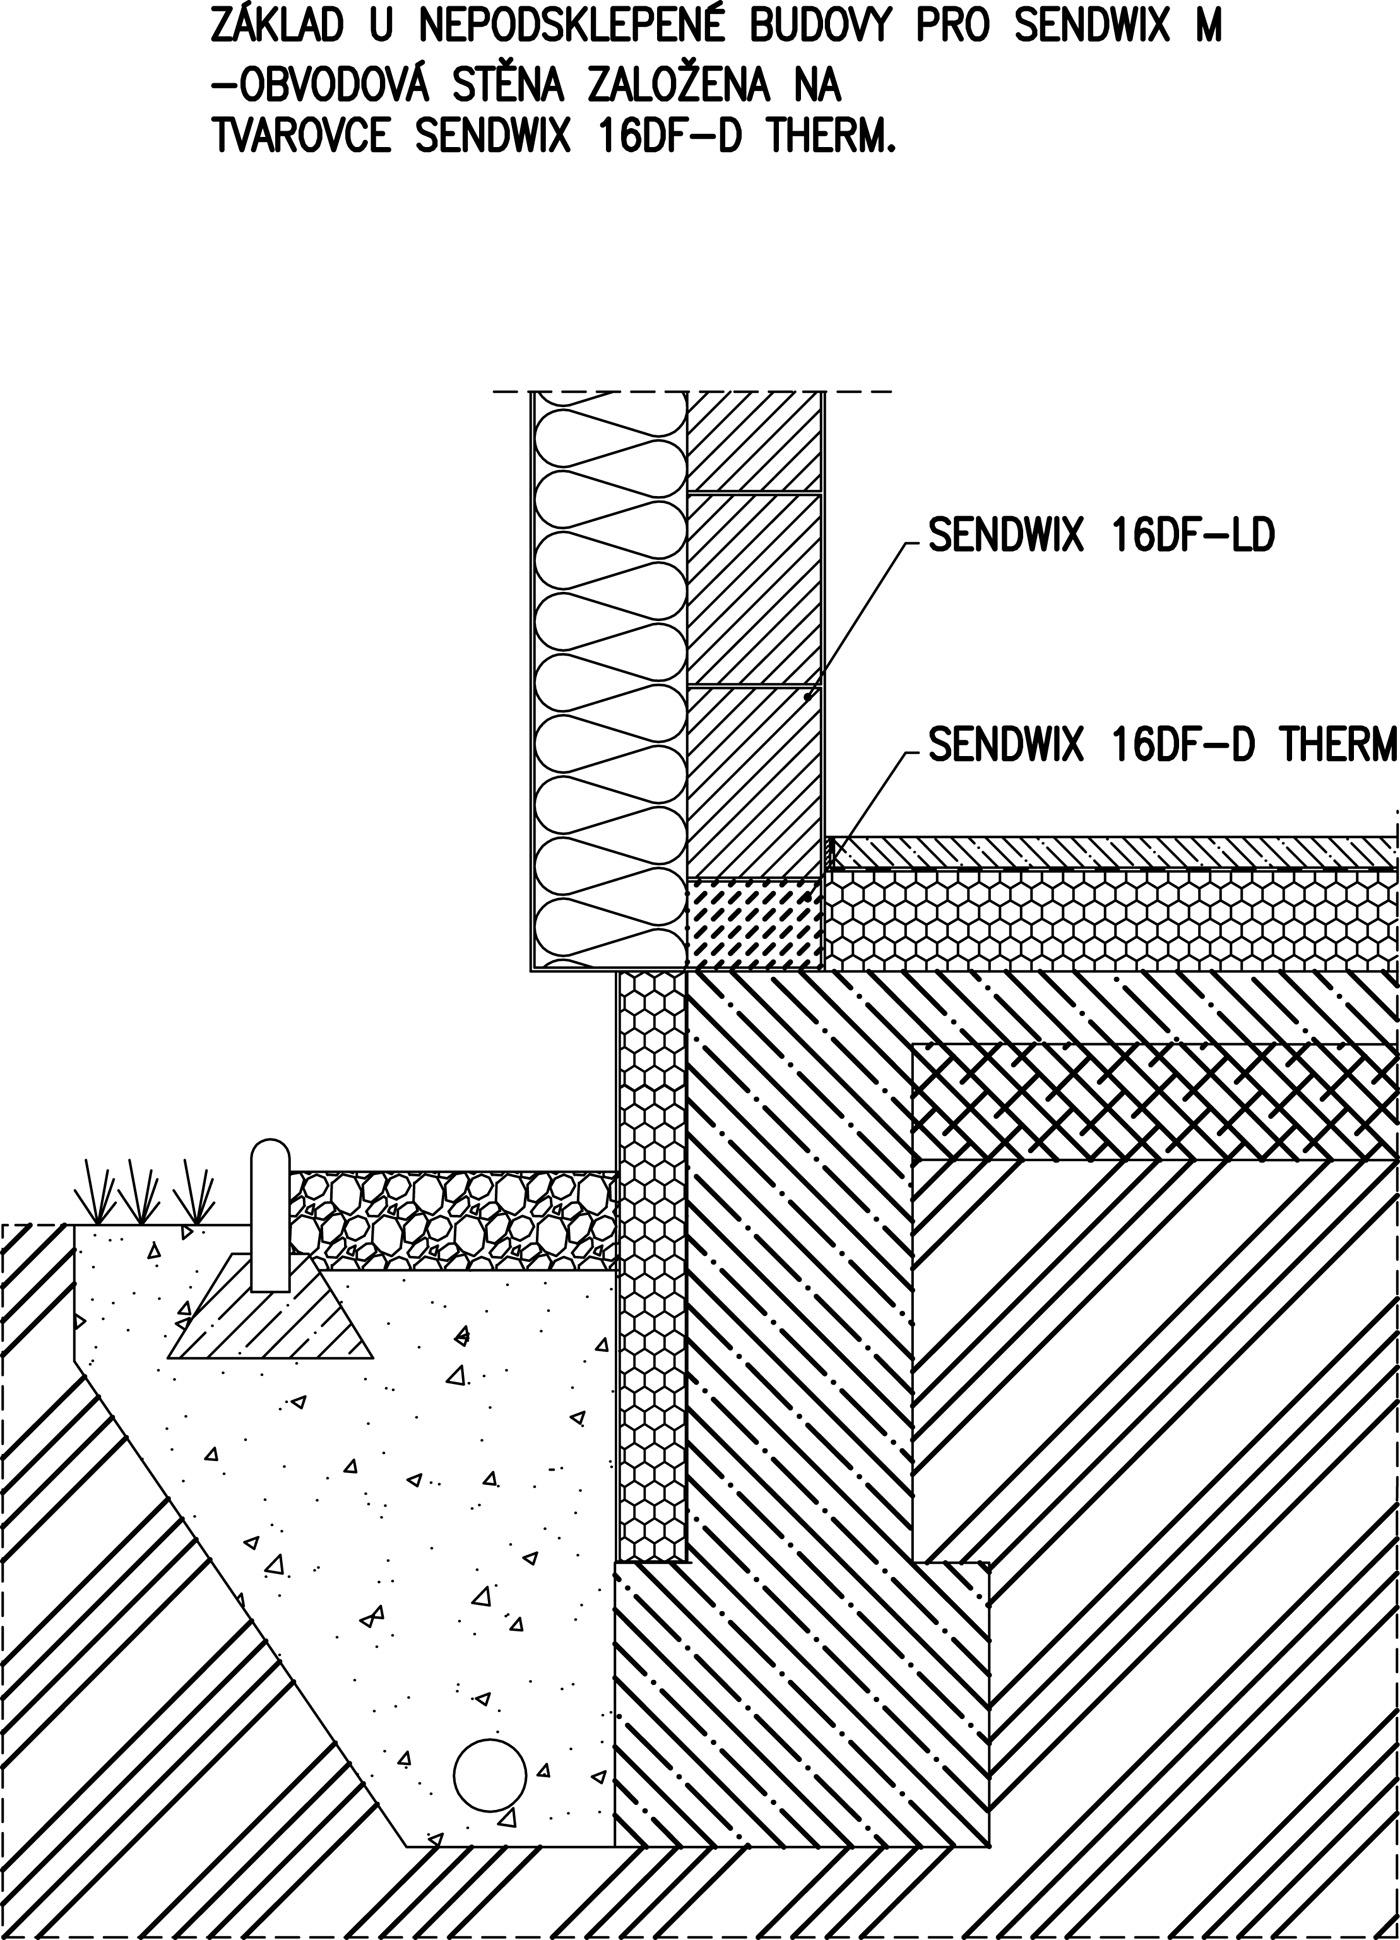 Nové řešení s přerušení tepelného mostu u obvodové stěny tvarovkou SENDWIX 16DF-D THERM, základ u nepodsklepené budovy, SENDWIX M